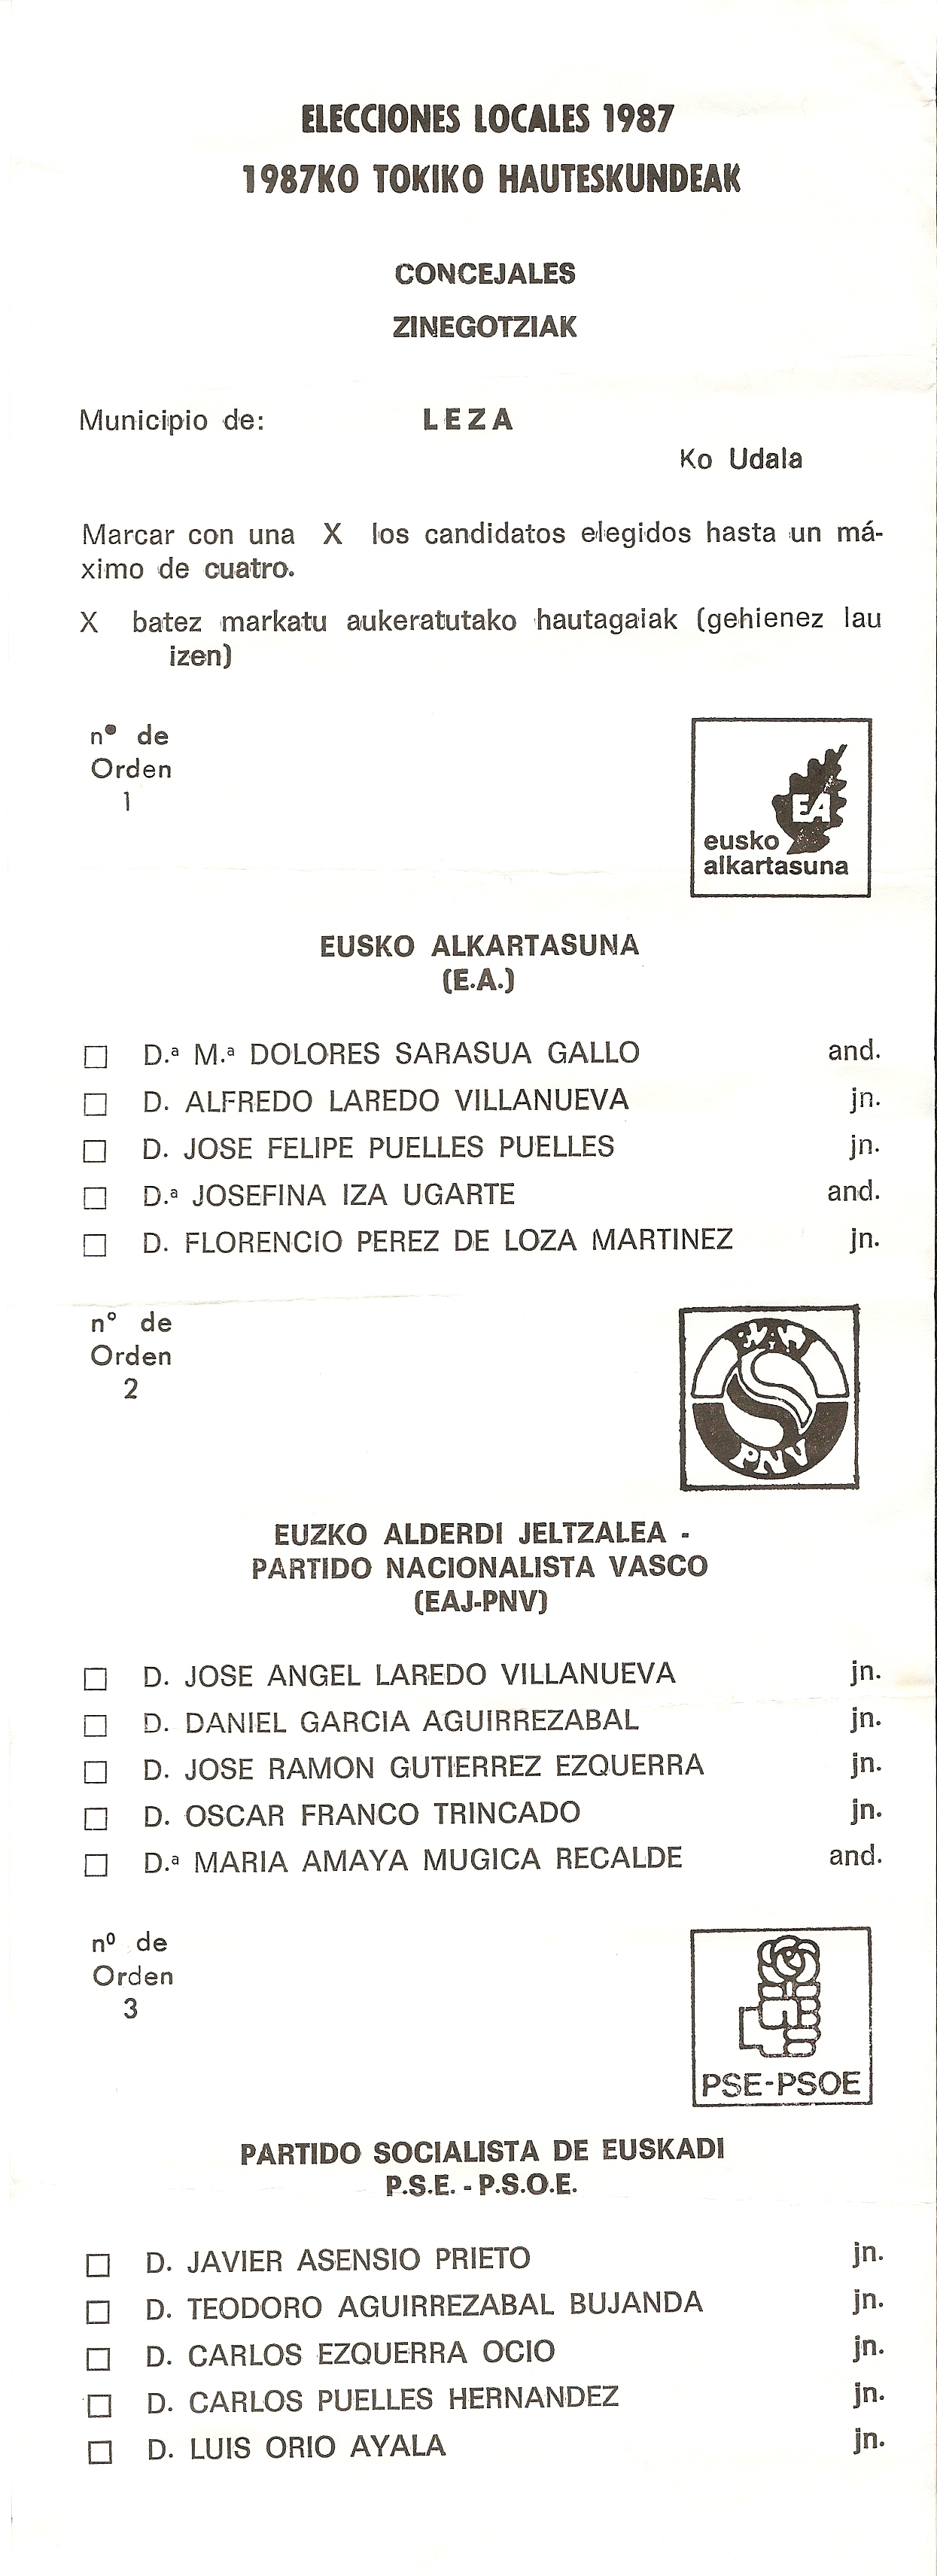 papeleta de voto de 1987